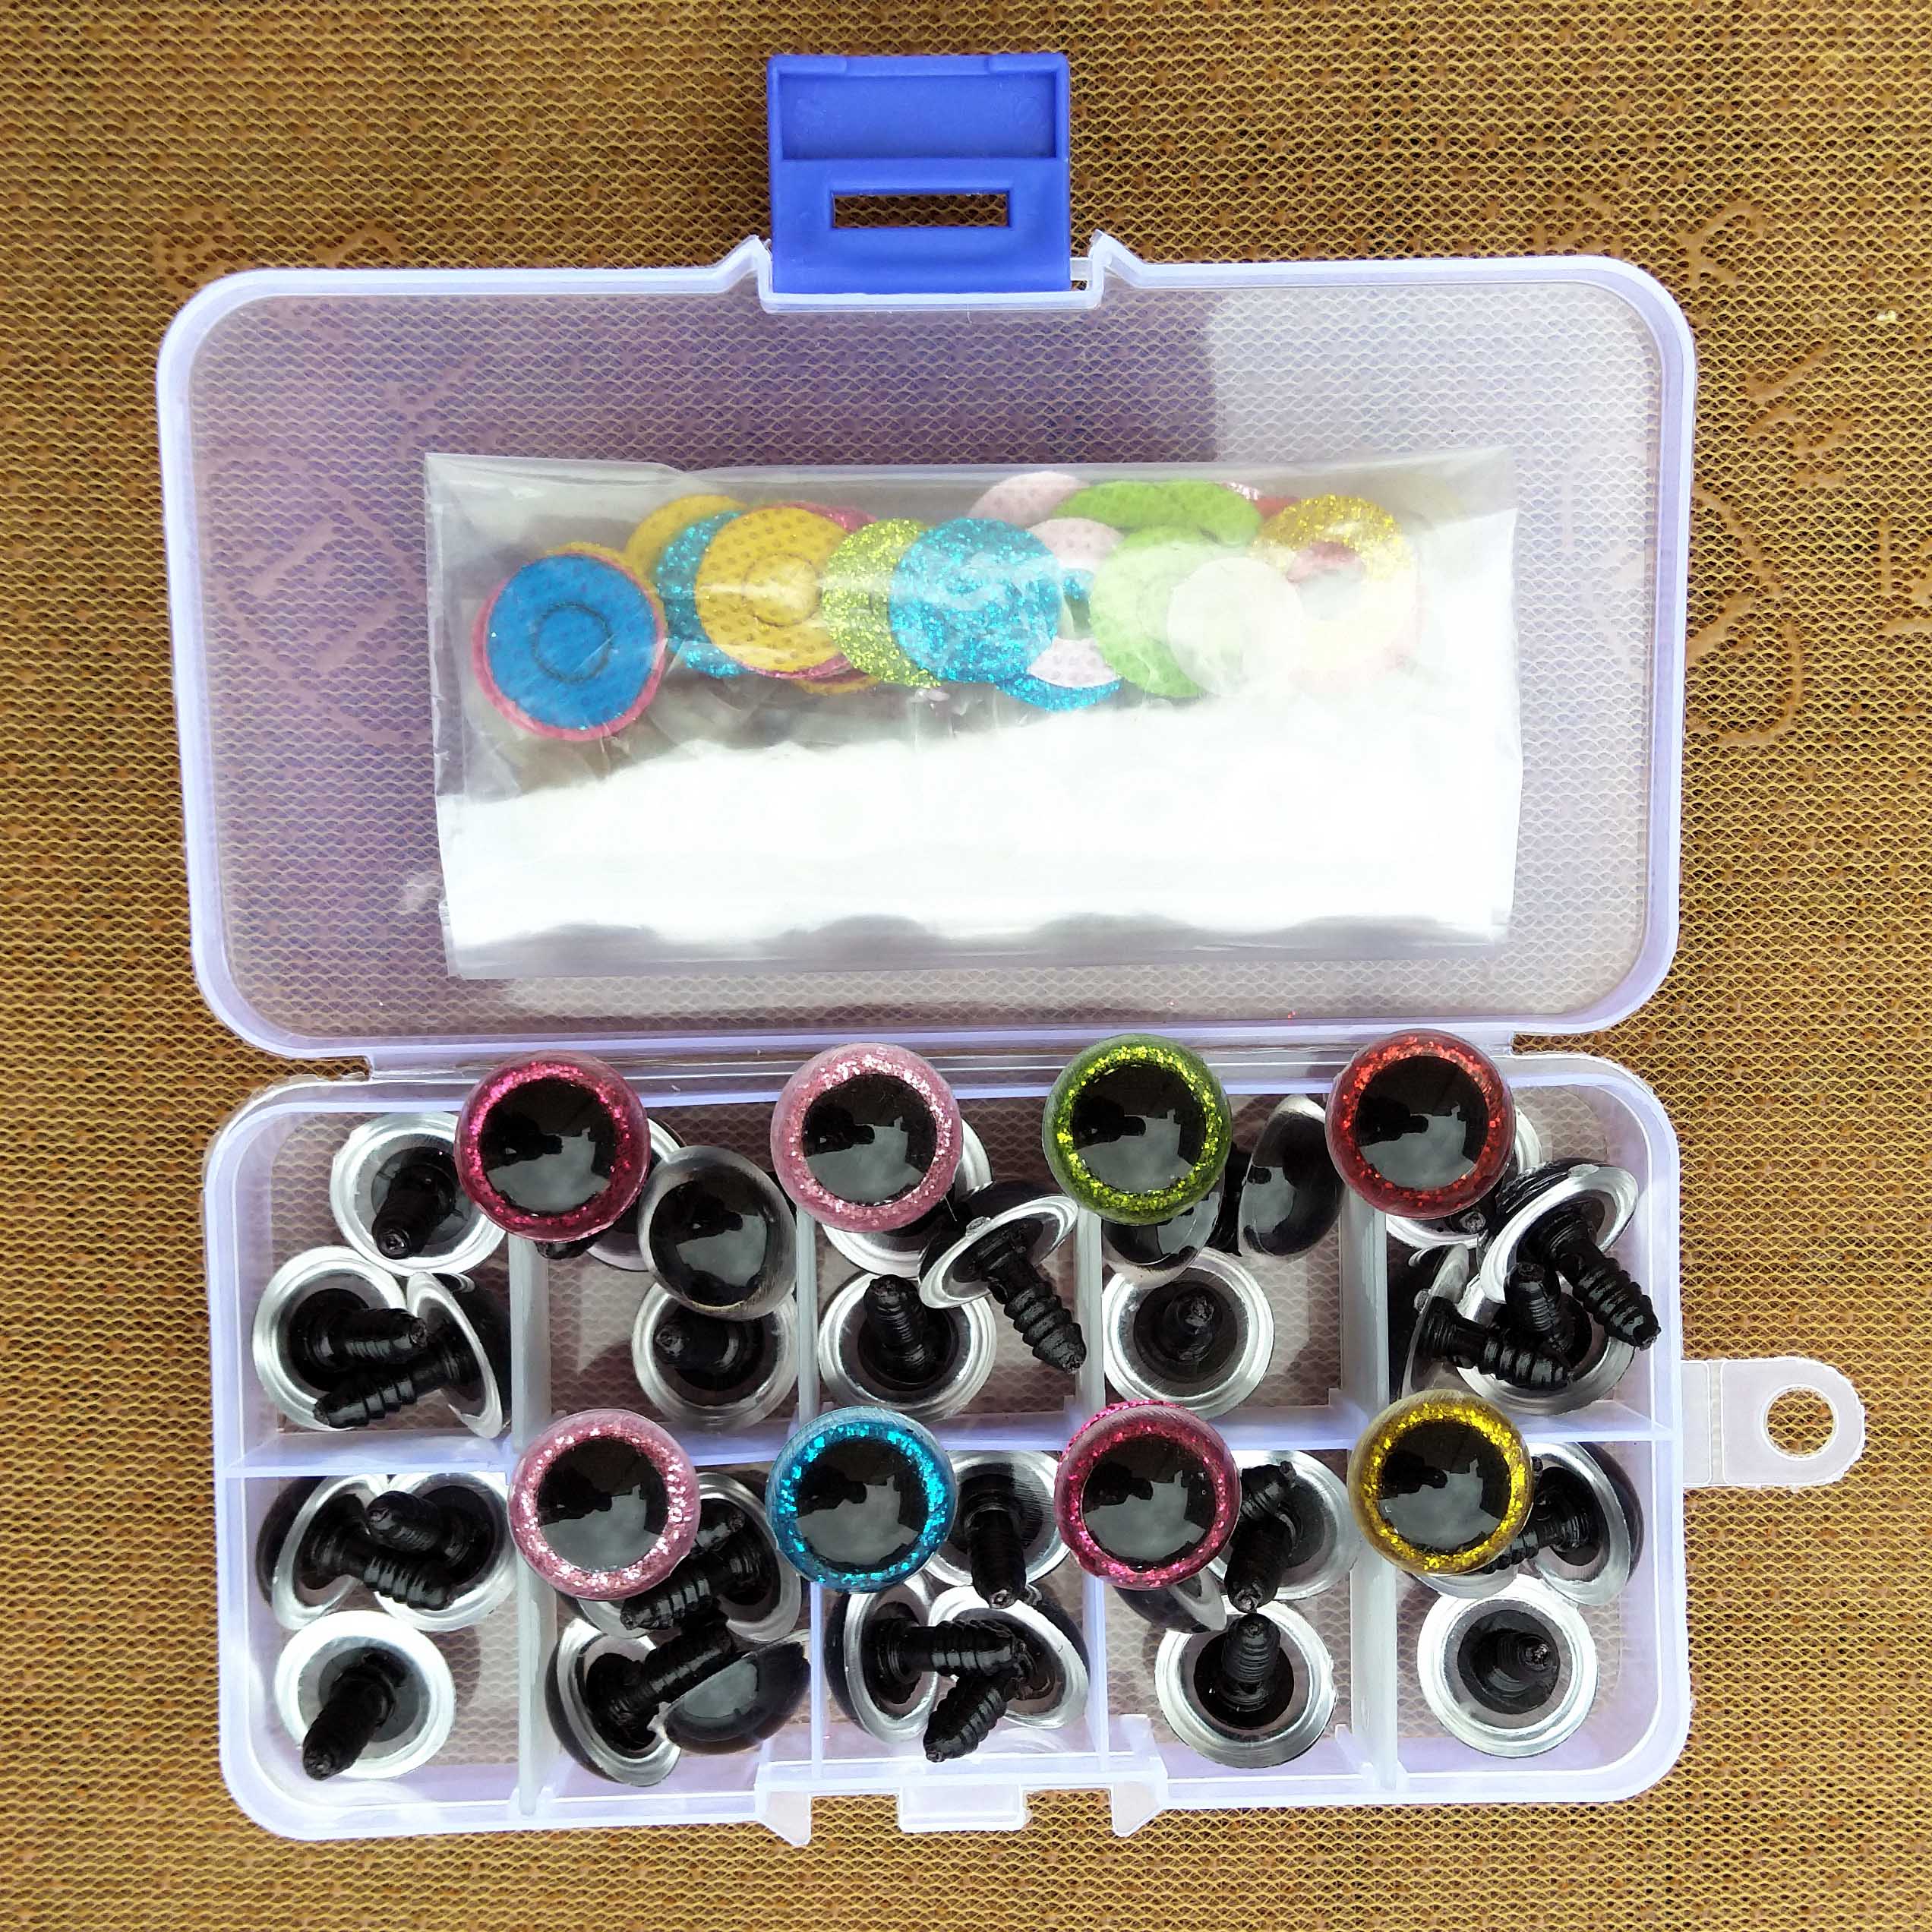 16 mm Bezpieczeństwo Plastikowe kolory do lalki dla zabawek Spirsed Animals Dolls Crafty Amigurumi Eye for Toy Pluszowe akcesoria